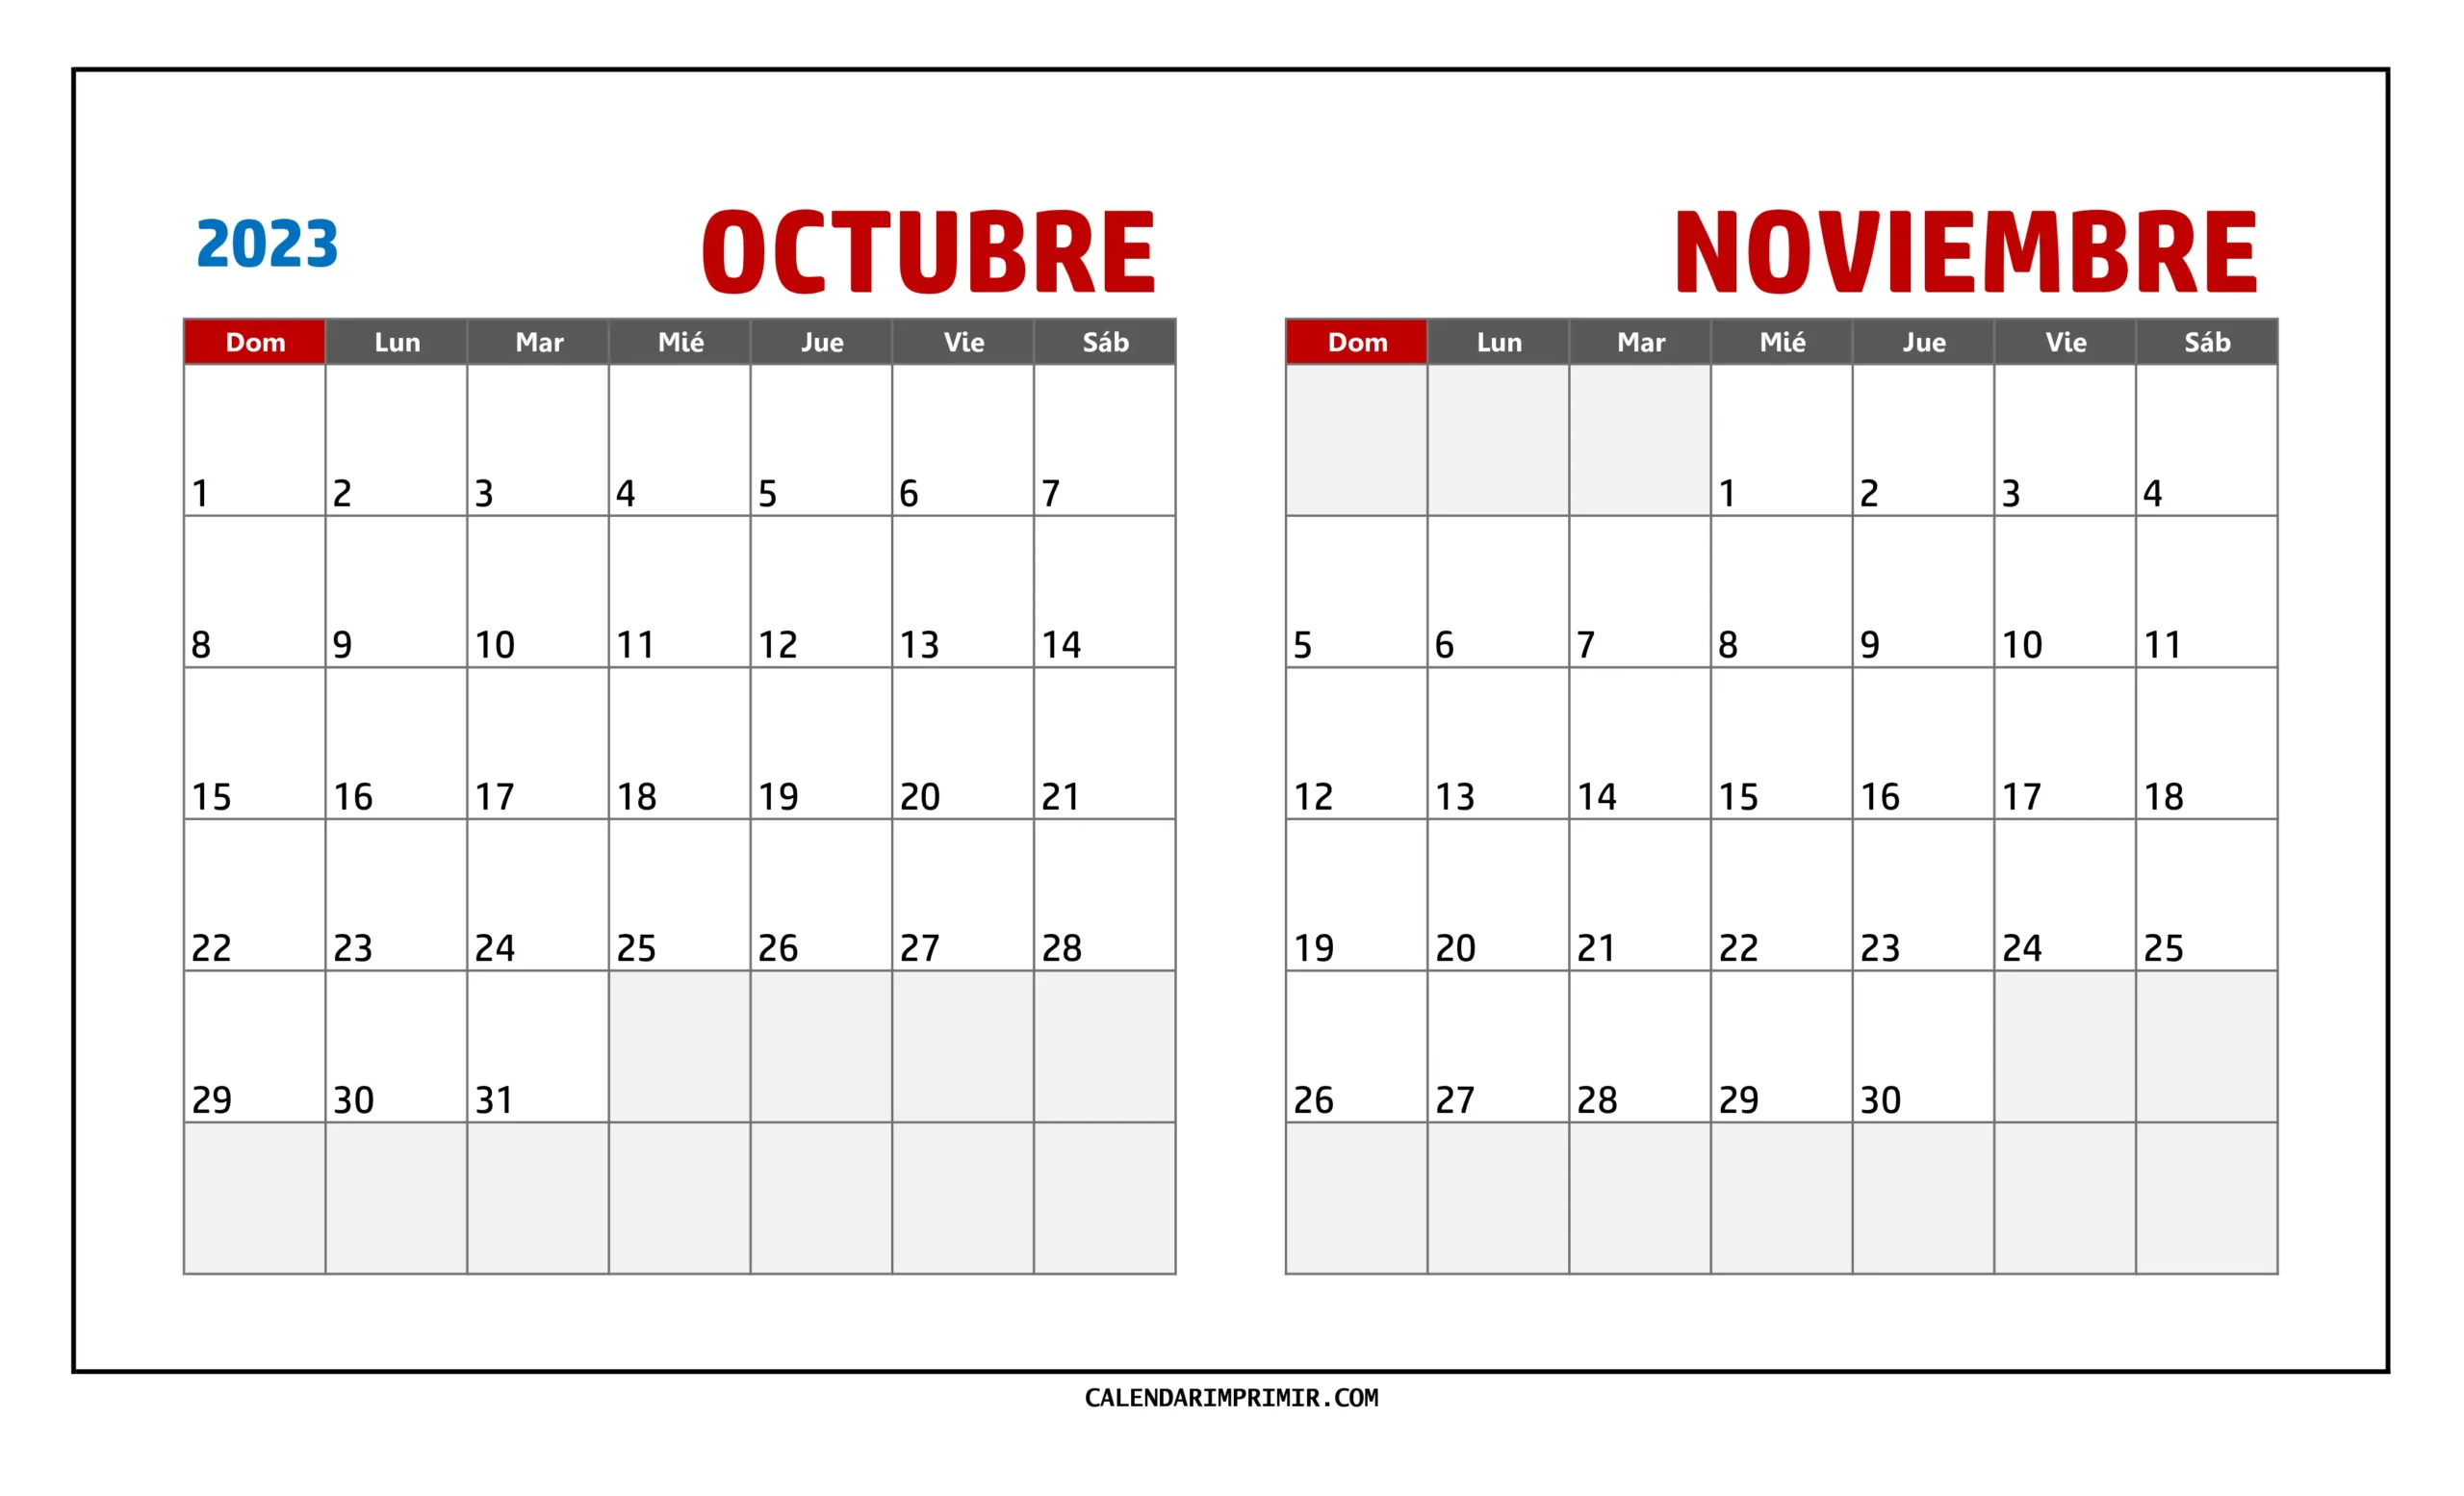 Gráfico de Calendario Octubre y Noviembre 2023 listo para imprimir, proporcionado por Calendar Imprimir.